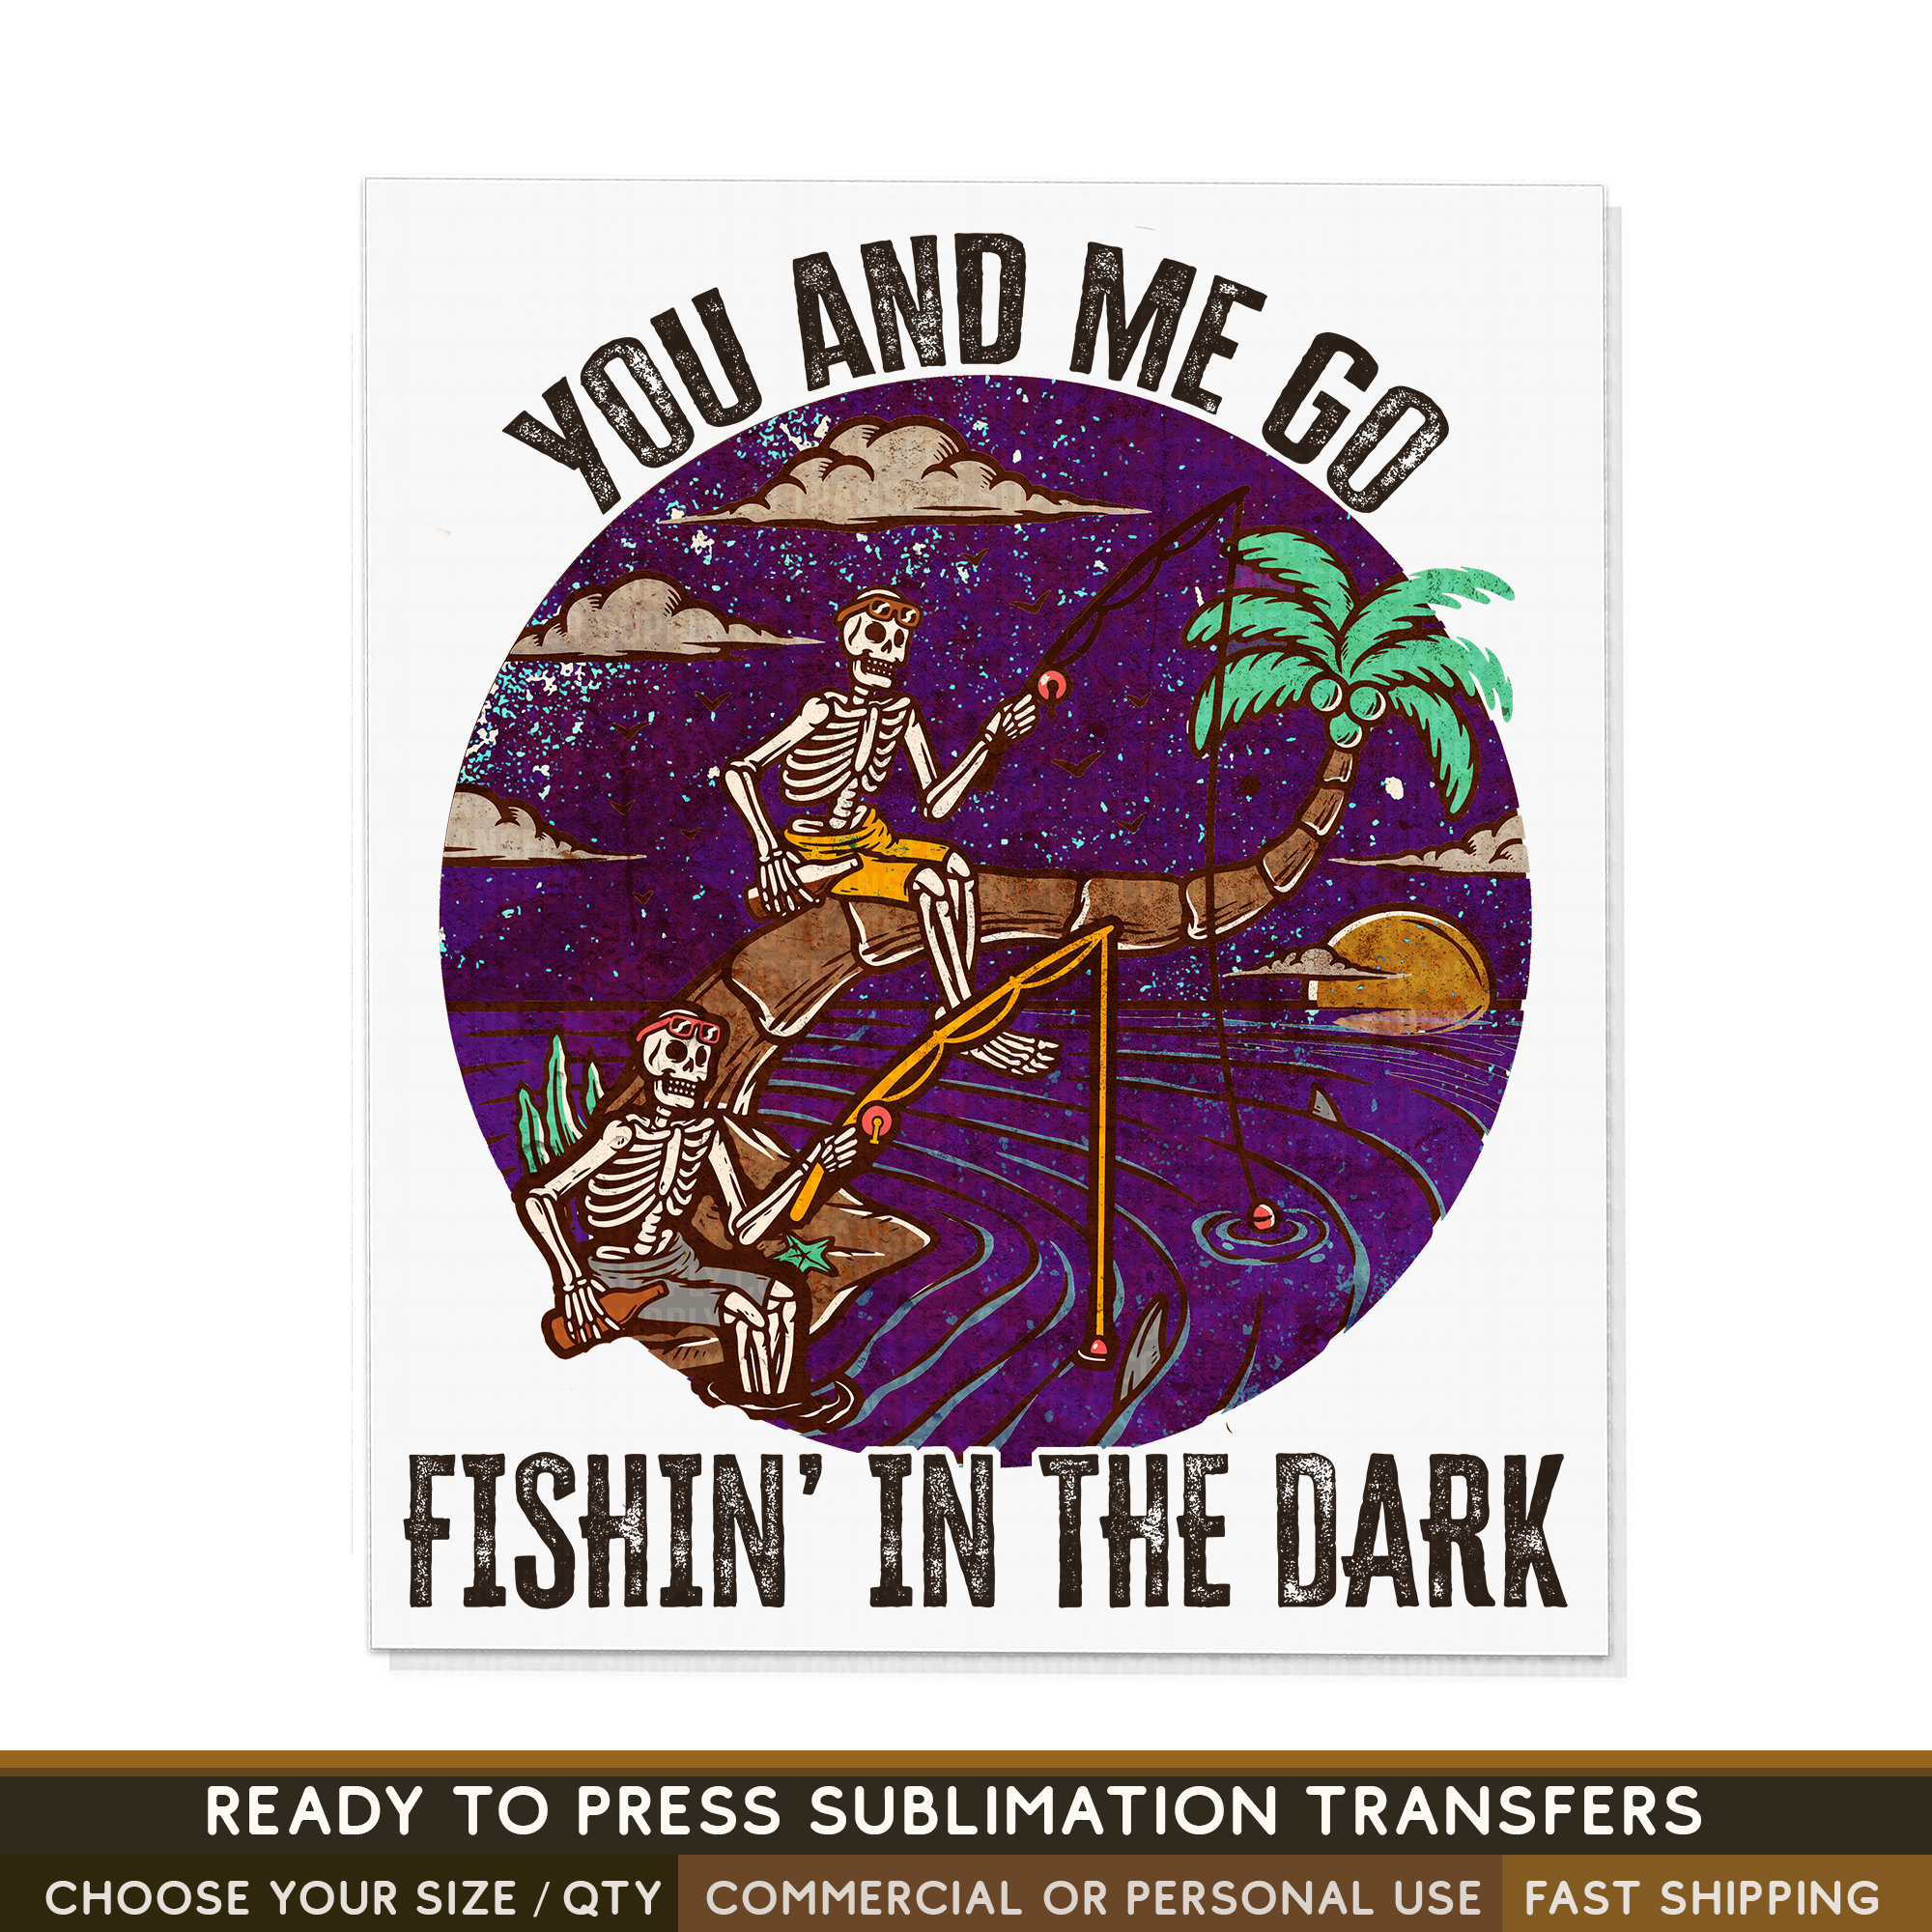 You & Me Fishing in the Dark, Fish Shirt, Men's Fishing Shirt, Funny Fishing  Shirt, Fishing Graphic T-shirt, Fisherman Shirt 